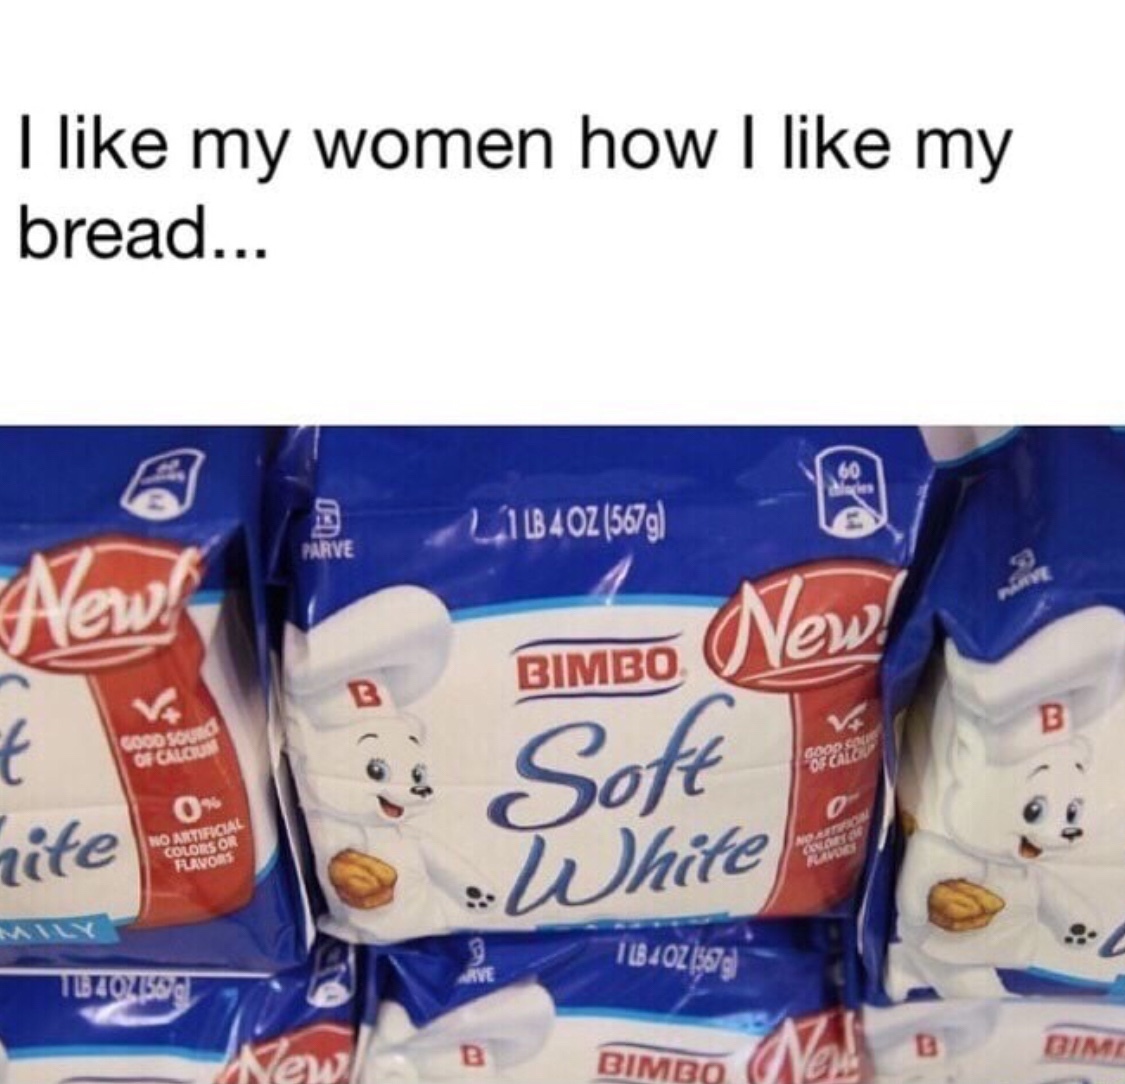 bread please! - meme